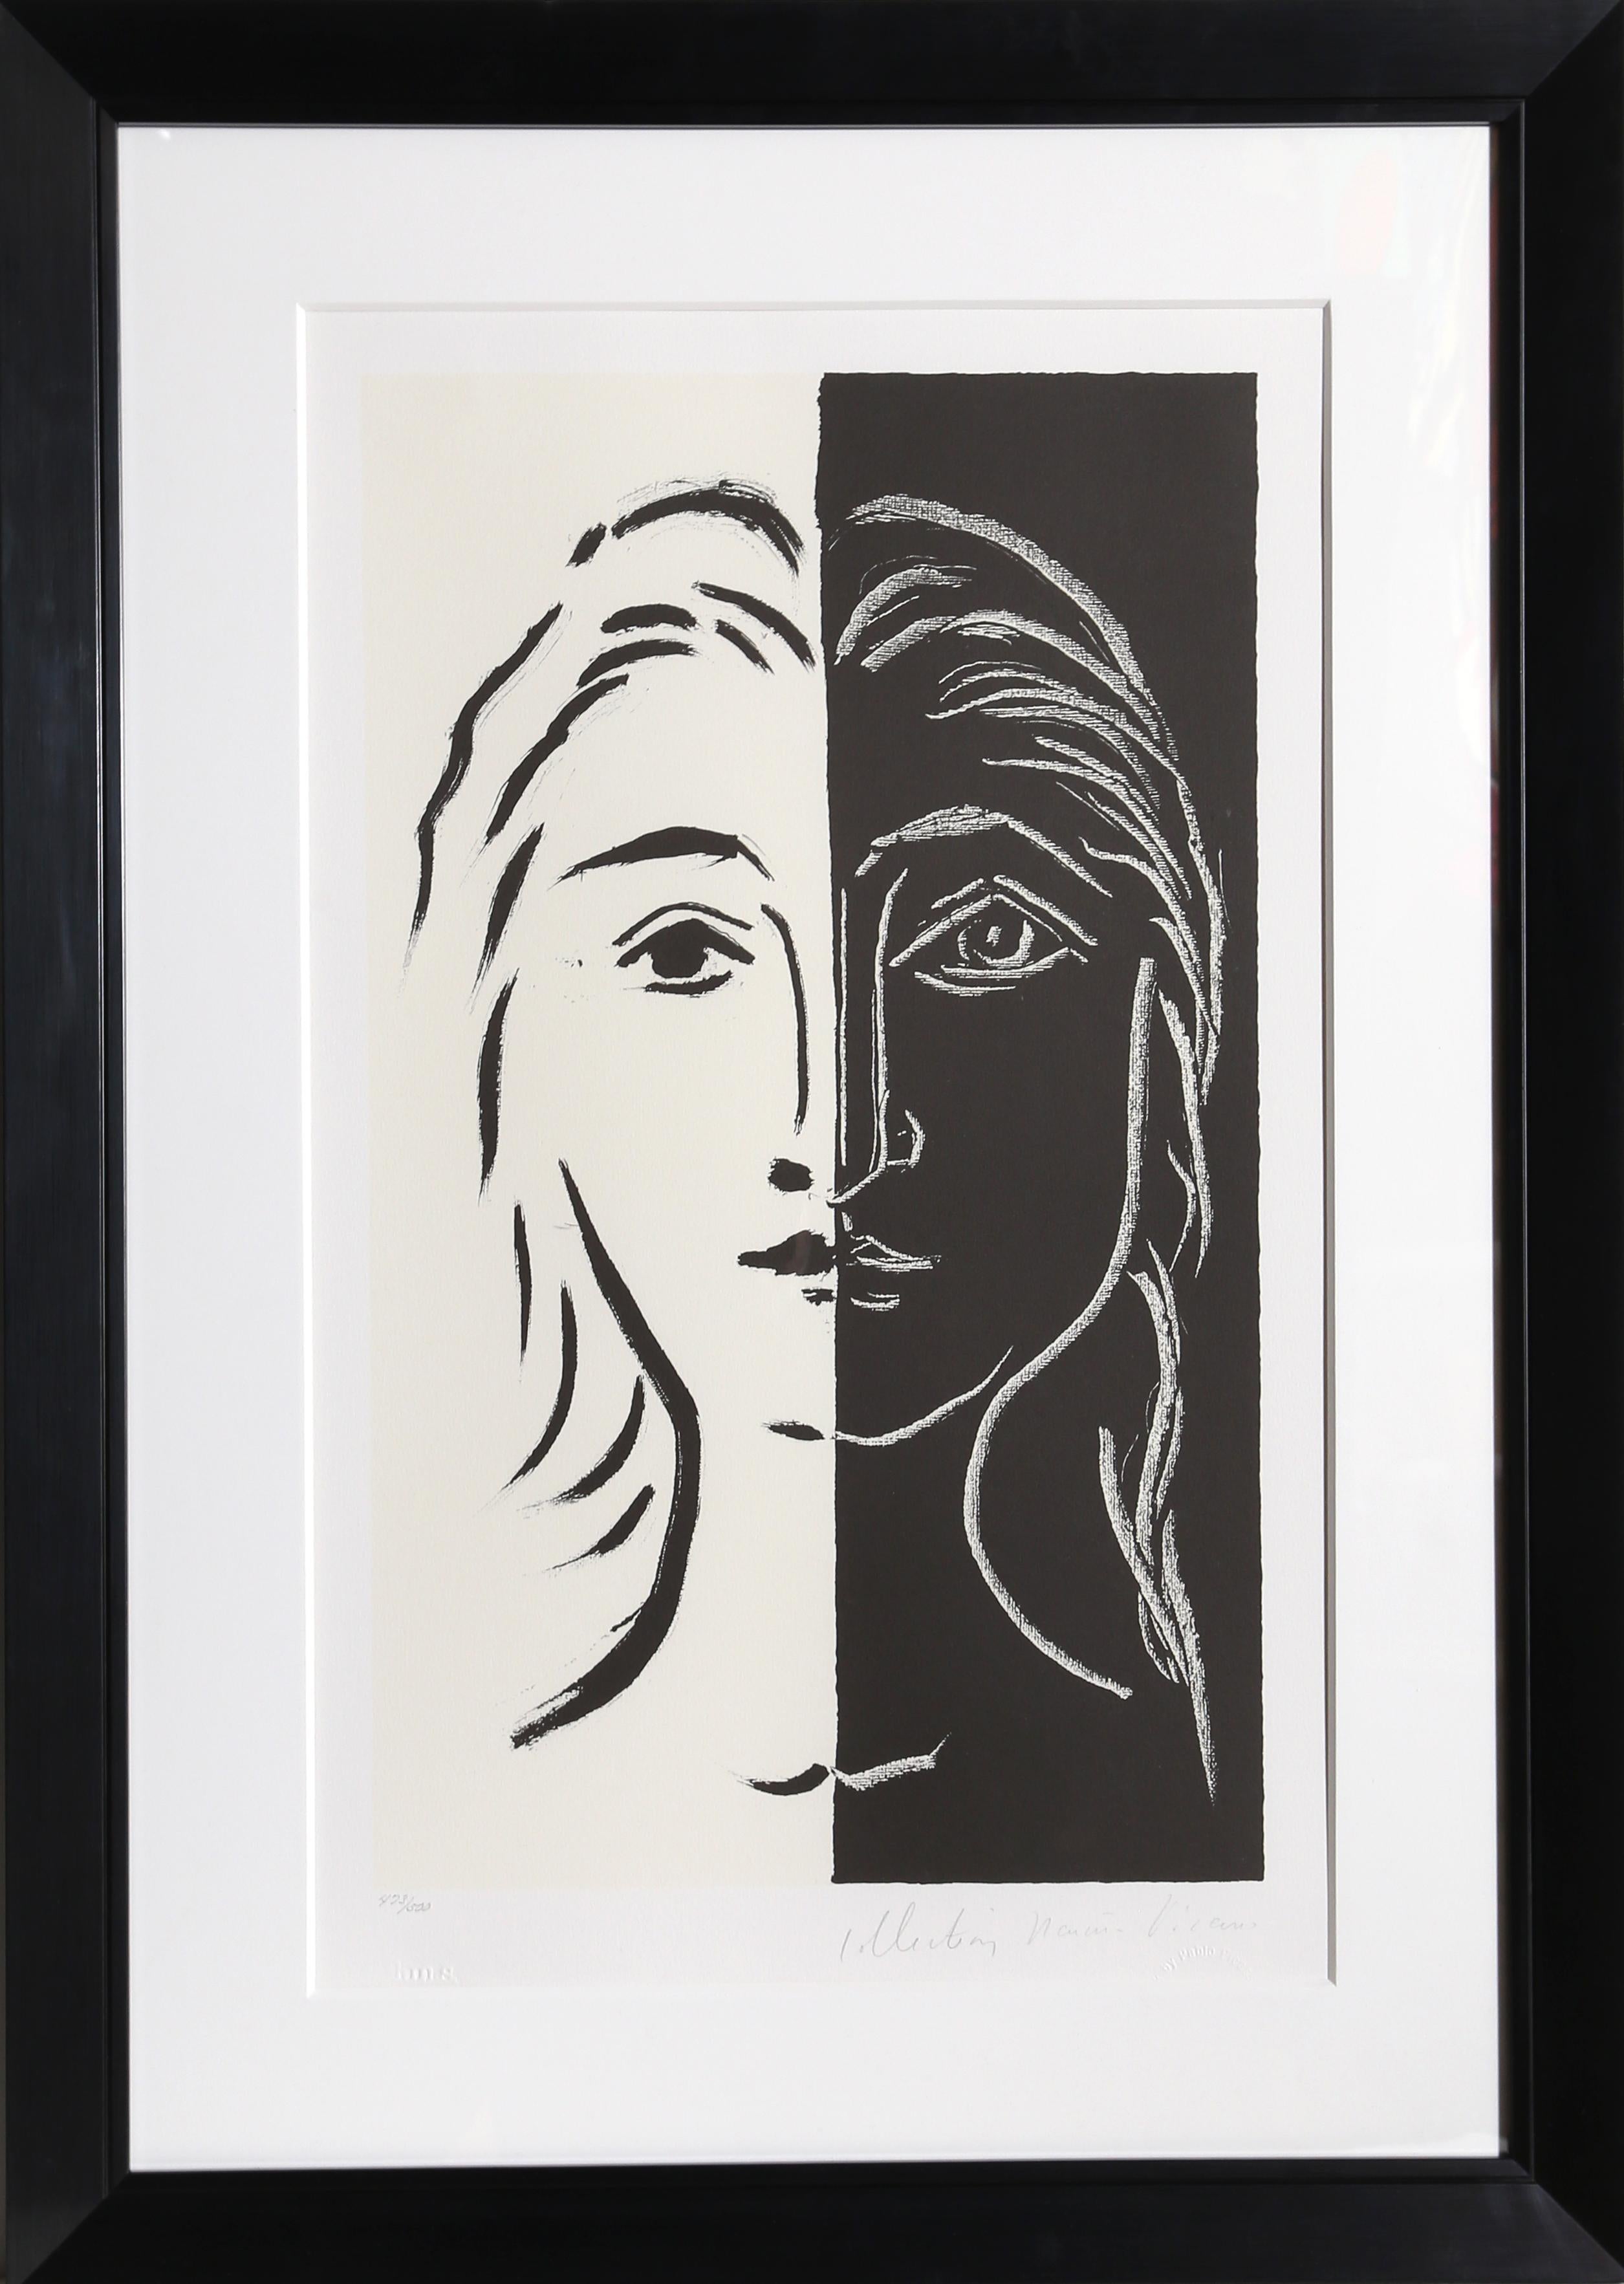 Une lithographie provenant de la Collection SALE de Marina Picasso d'après le tableau de Pablo Picasso "Portrait en Deux Parties Noire et Blanche".  La peinture originale a été achevée en 1924. Dans les années 1970, après la mort de Picasso, Marina